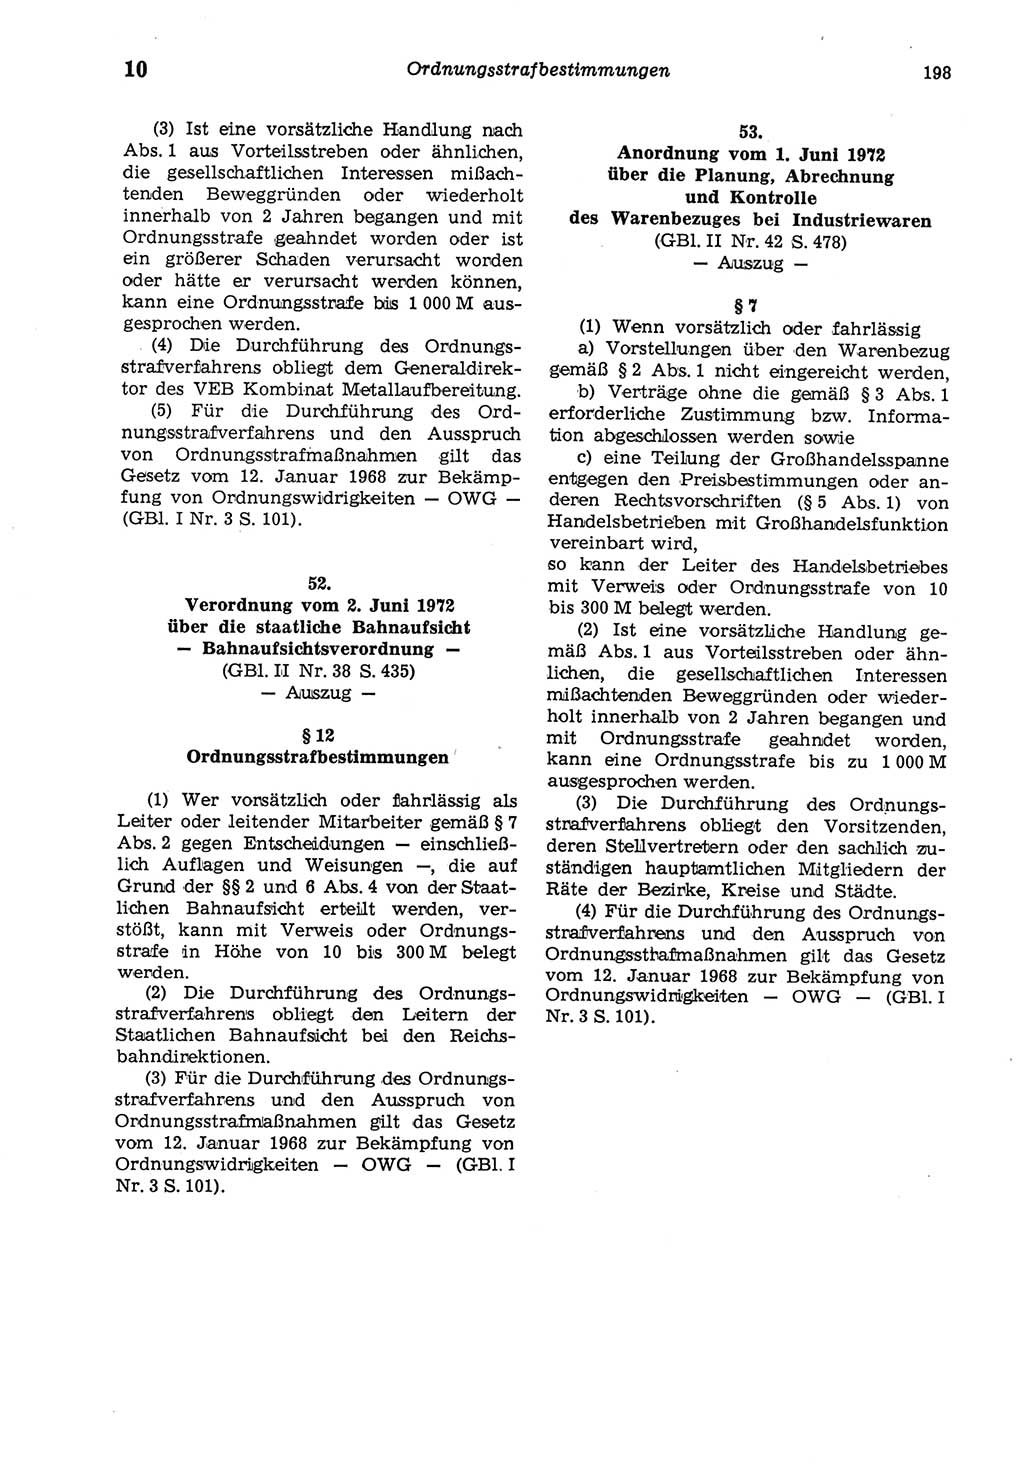 Strafgesetzbuch (StGB) der Deutschen Demokratischen Republik (DDR) und angrenzende Gesetze und Bestimmungen 1975, Seite 198 (StGB DDR Ges. Best. 1975, S. 198)